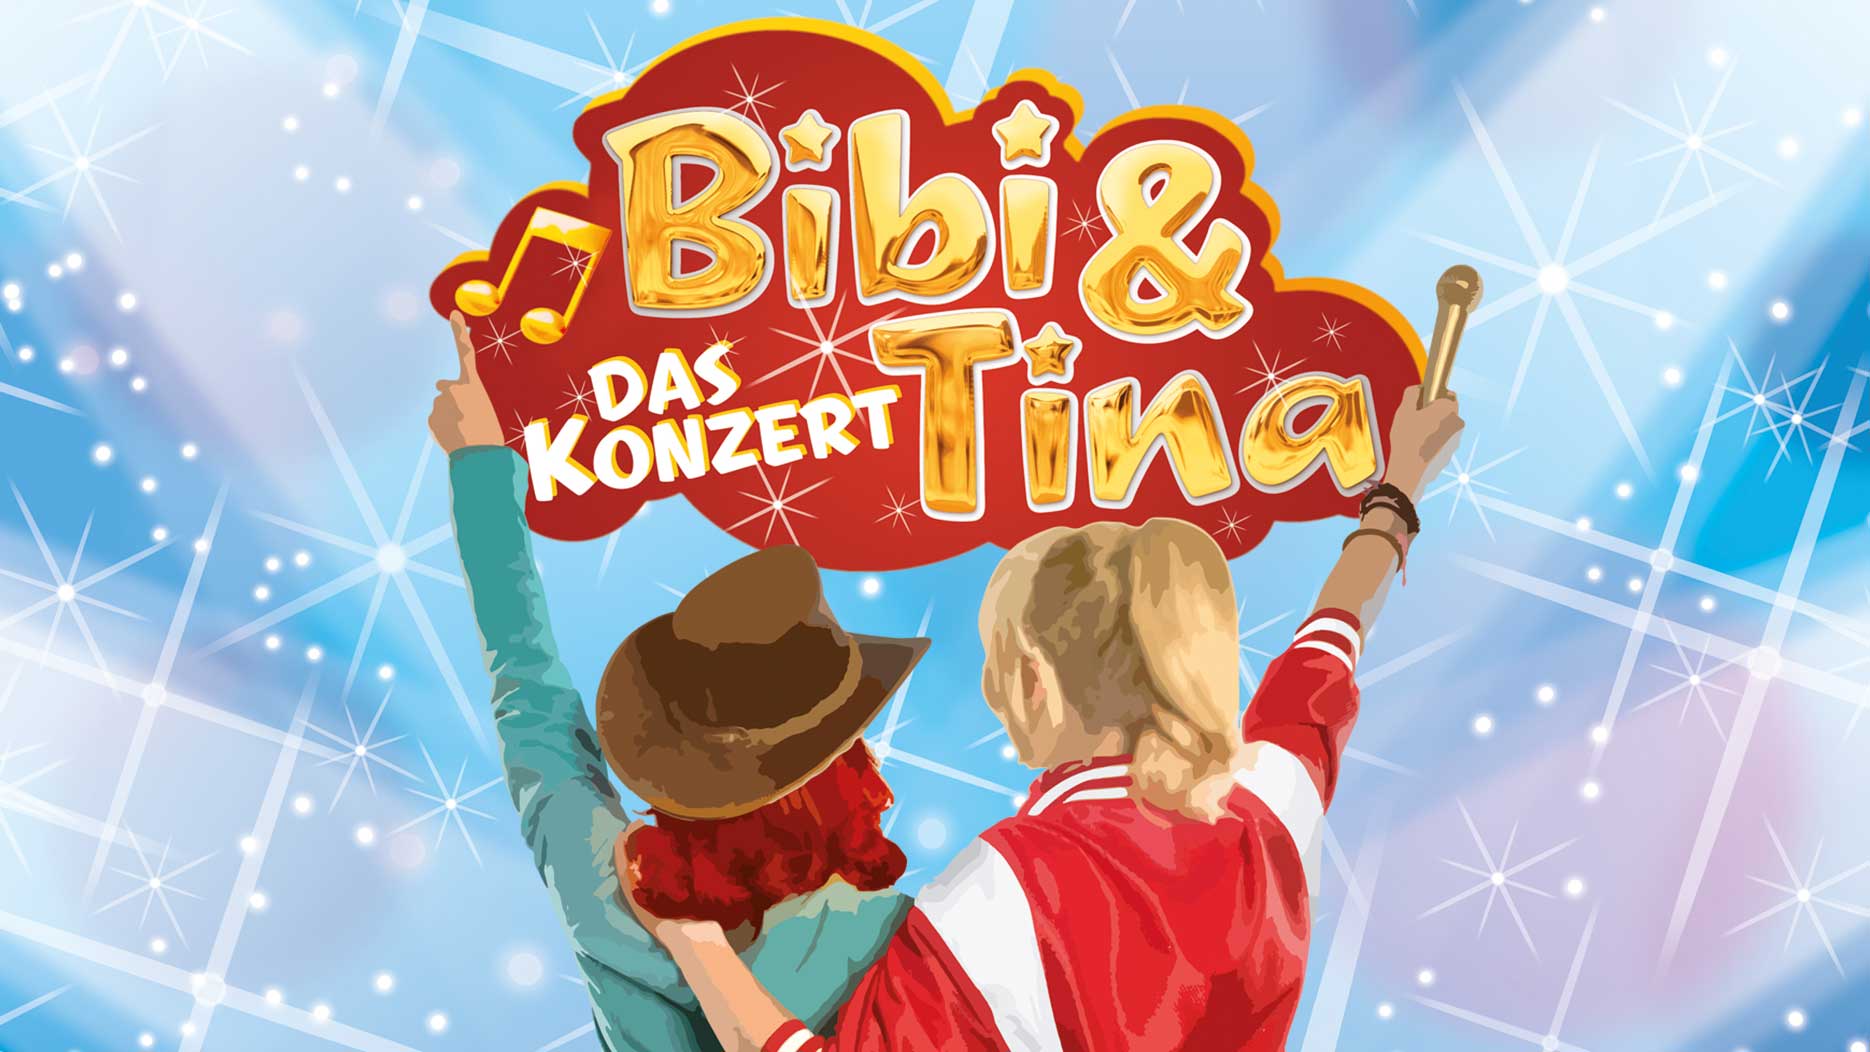 Bibi und Tina Konzert Kinder